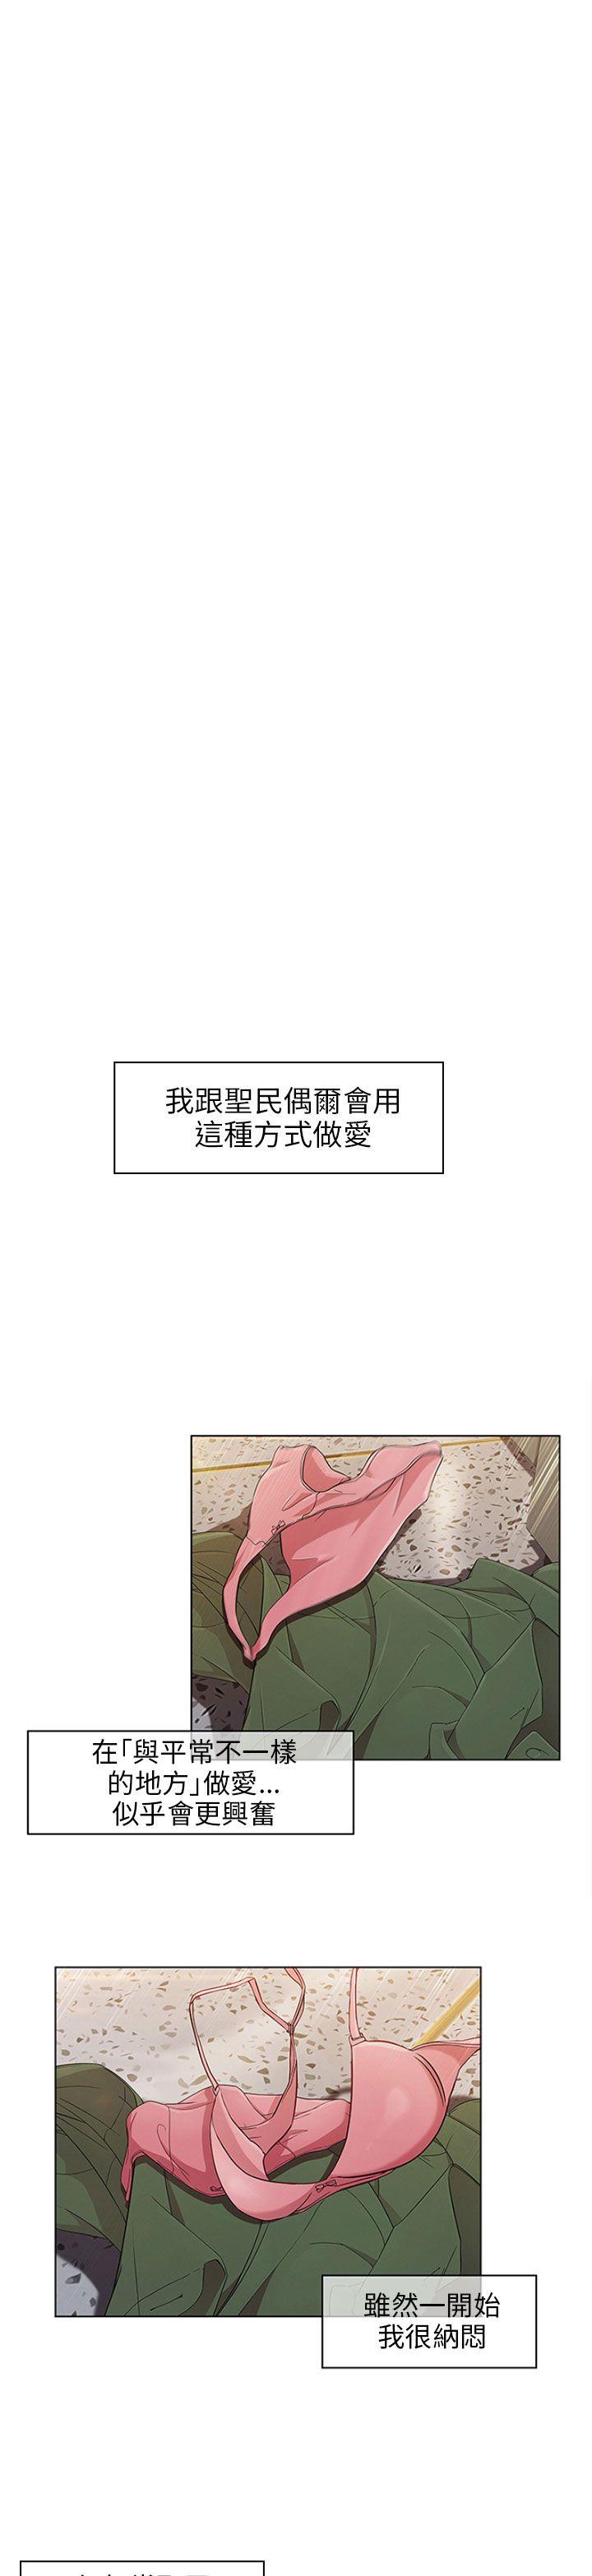 《湘亚:积极追求攻势》漫画 第11话